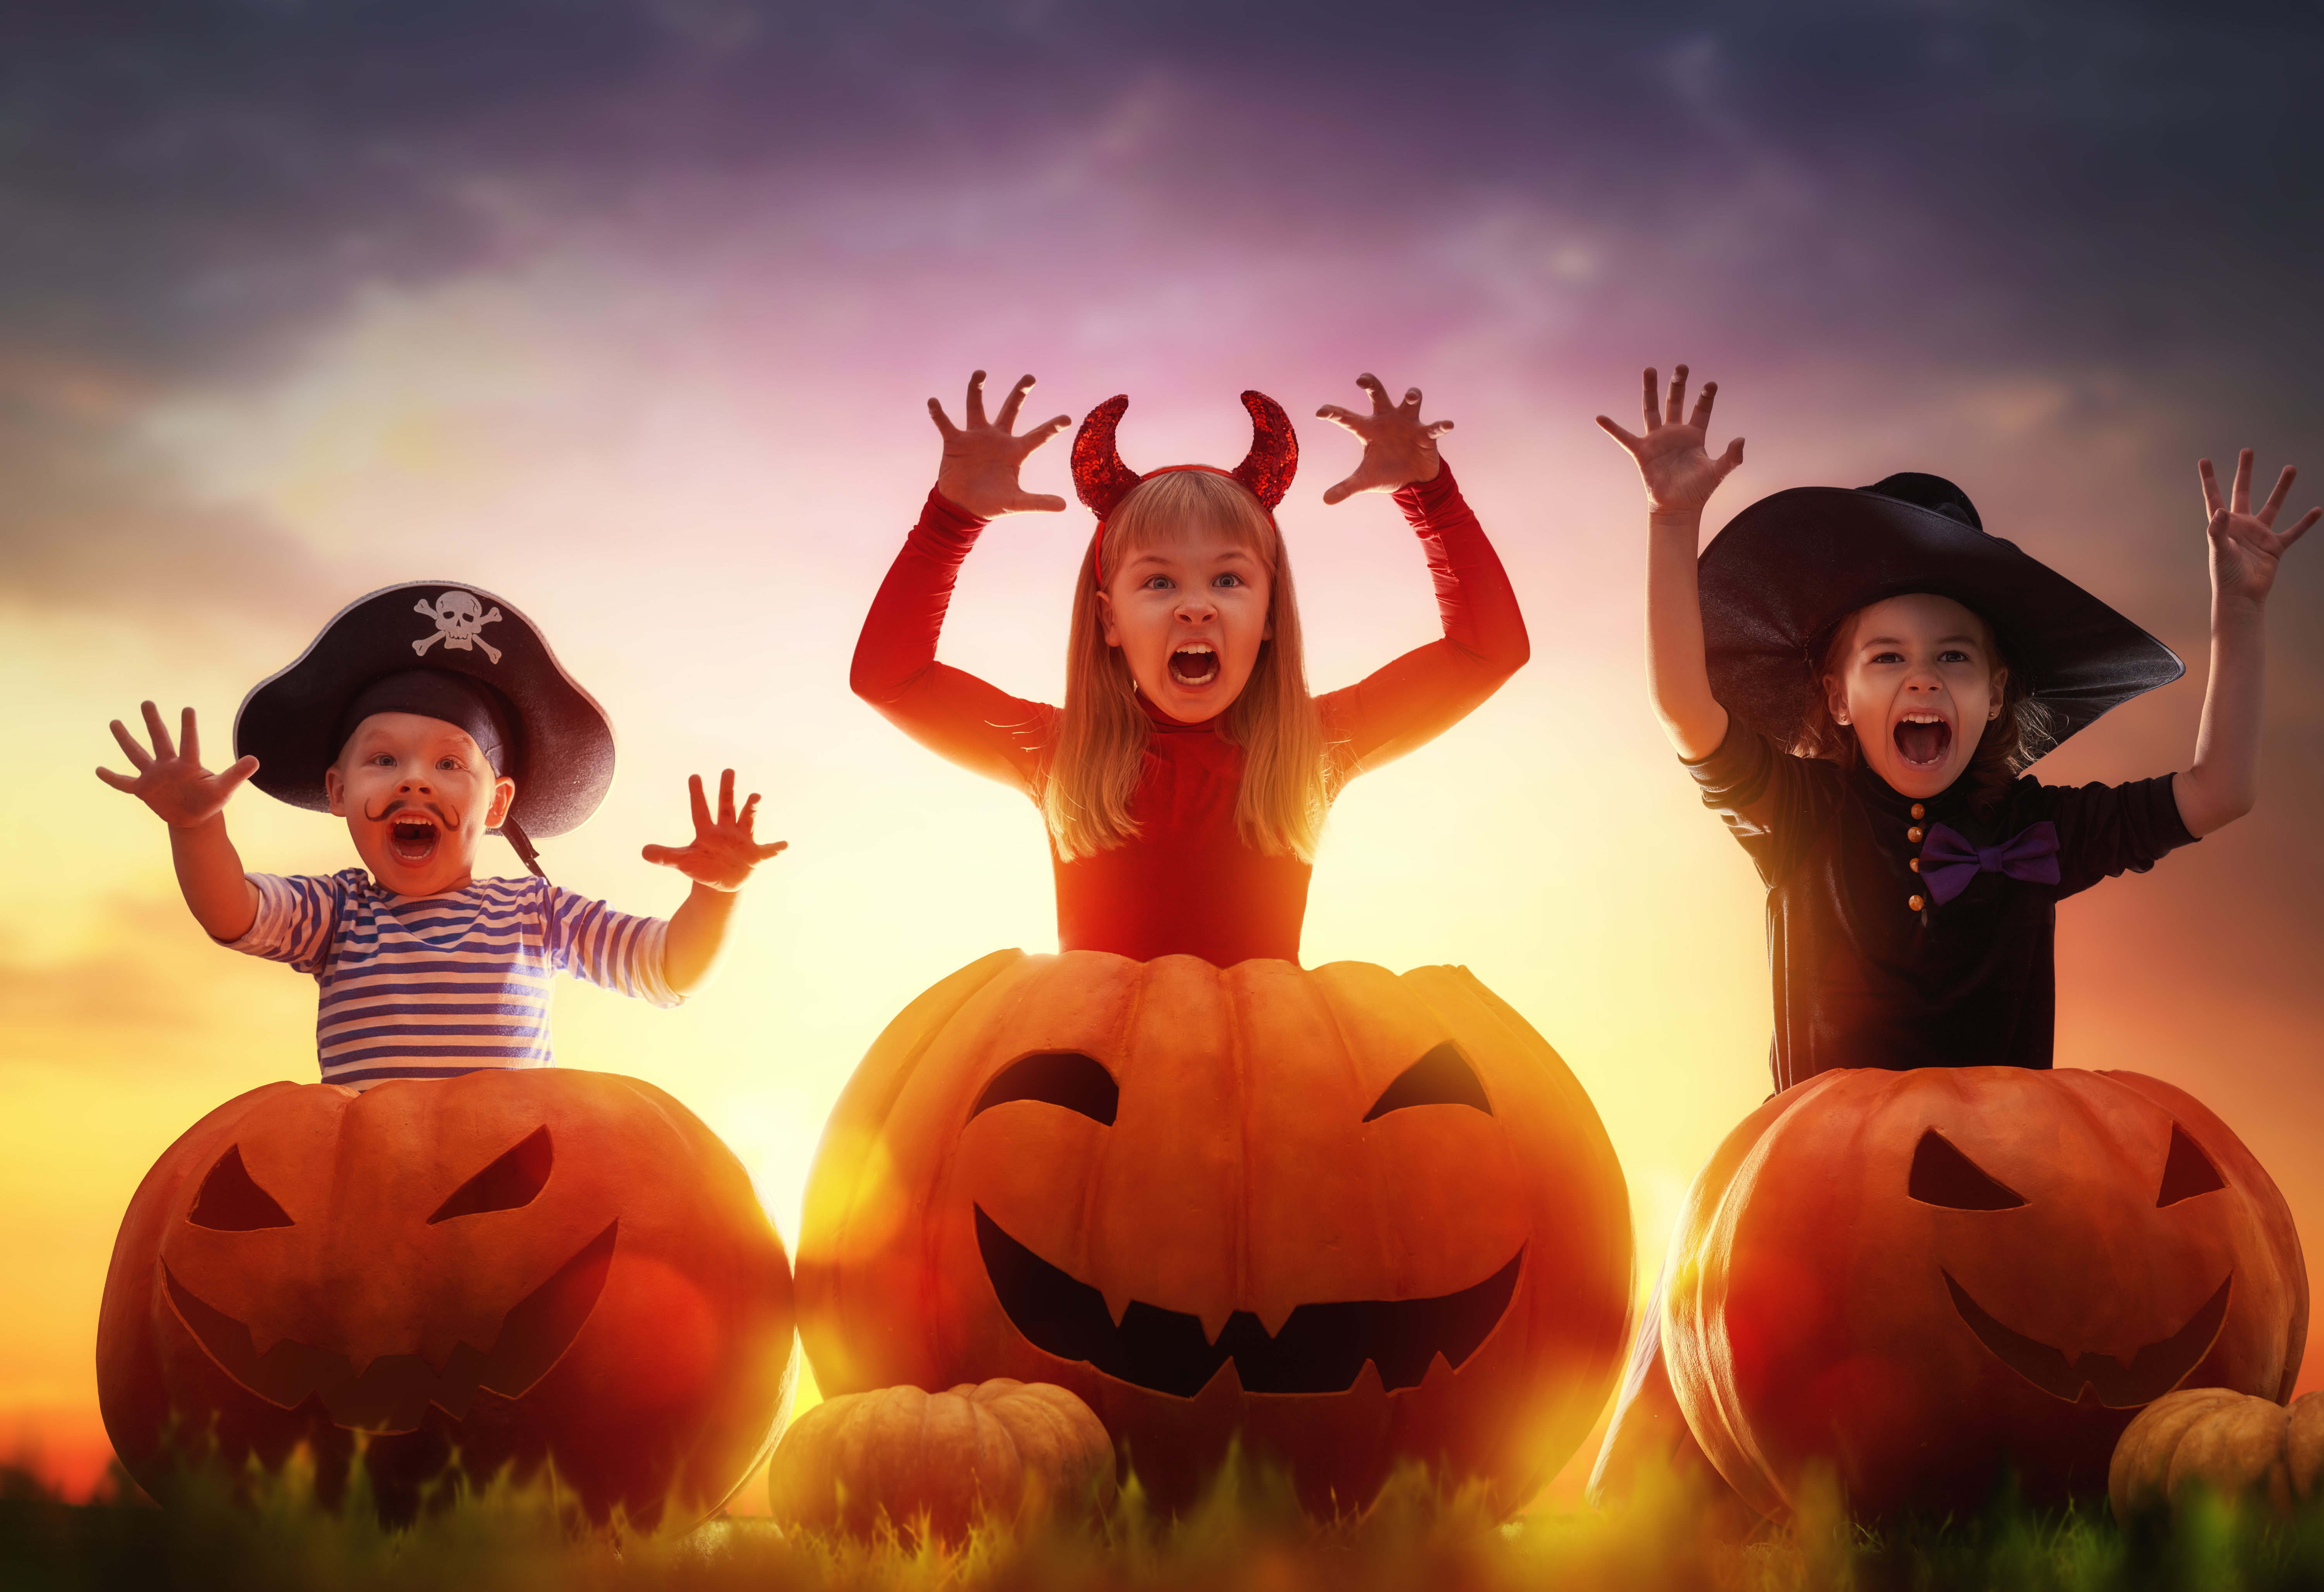 Halloween imge of children and pumpkins